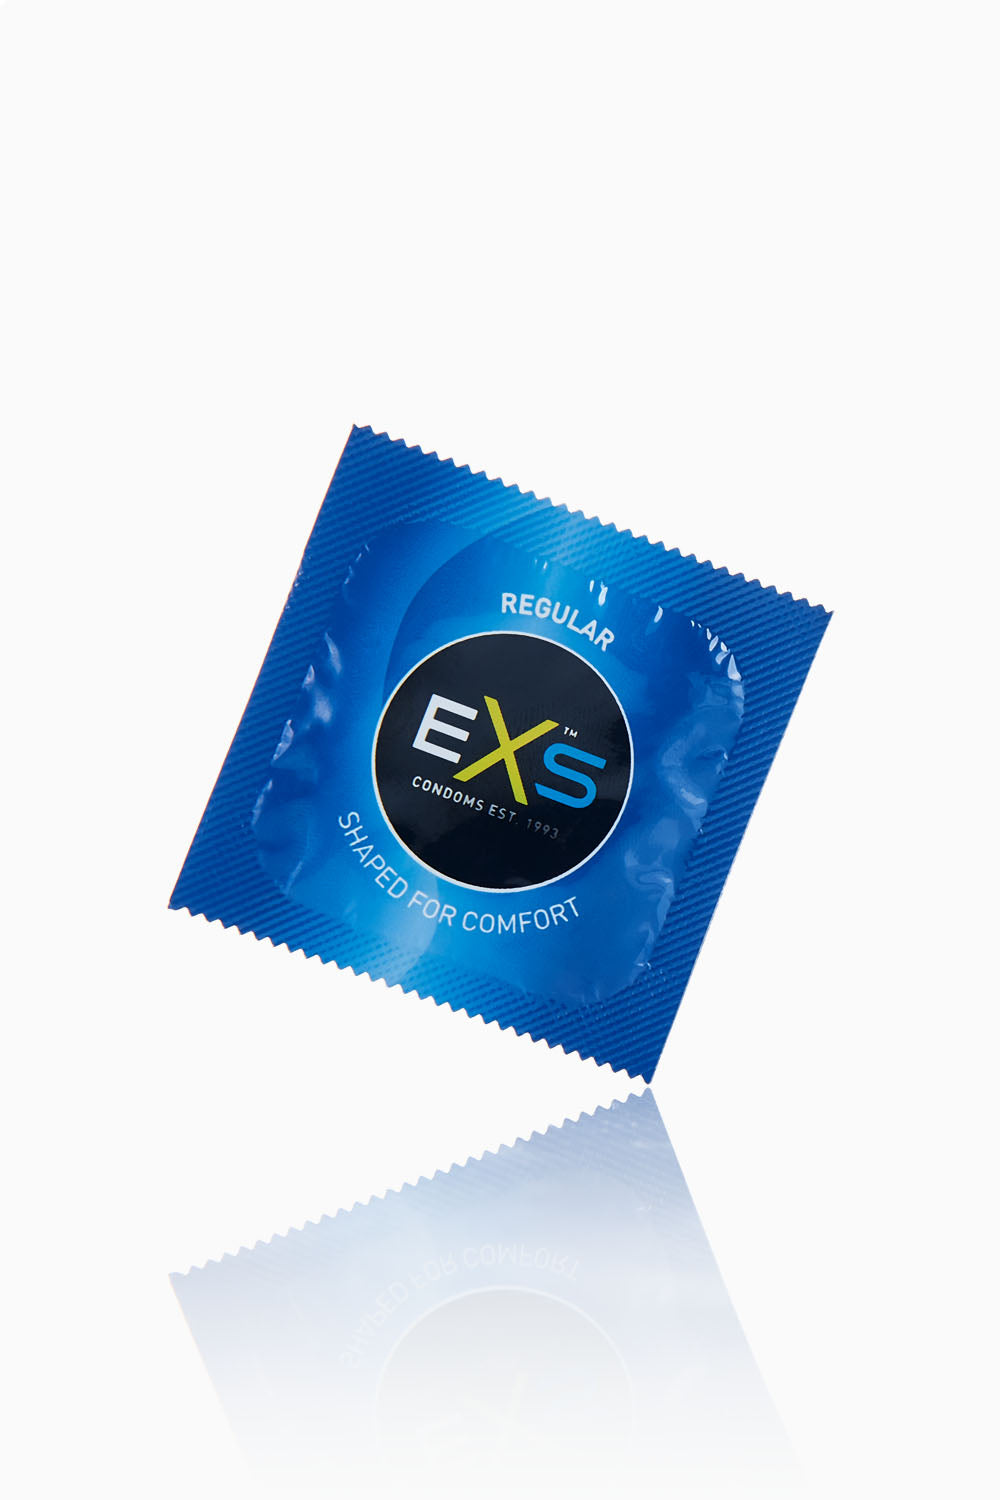 EXS Regular Condoms 50 Pack